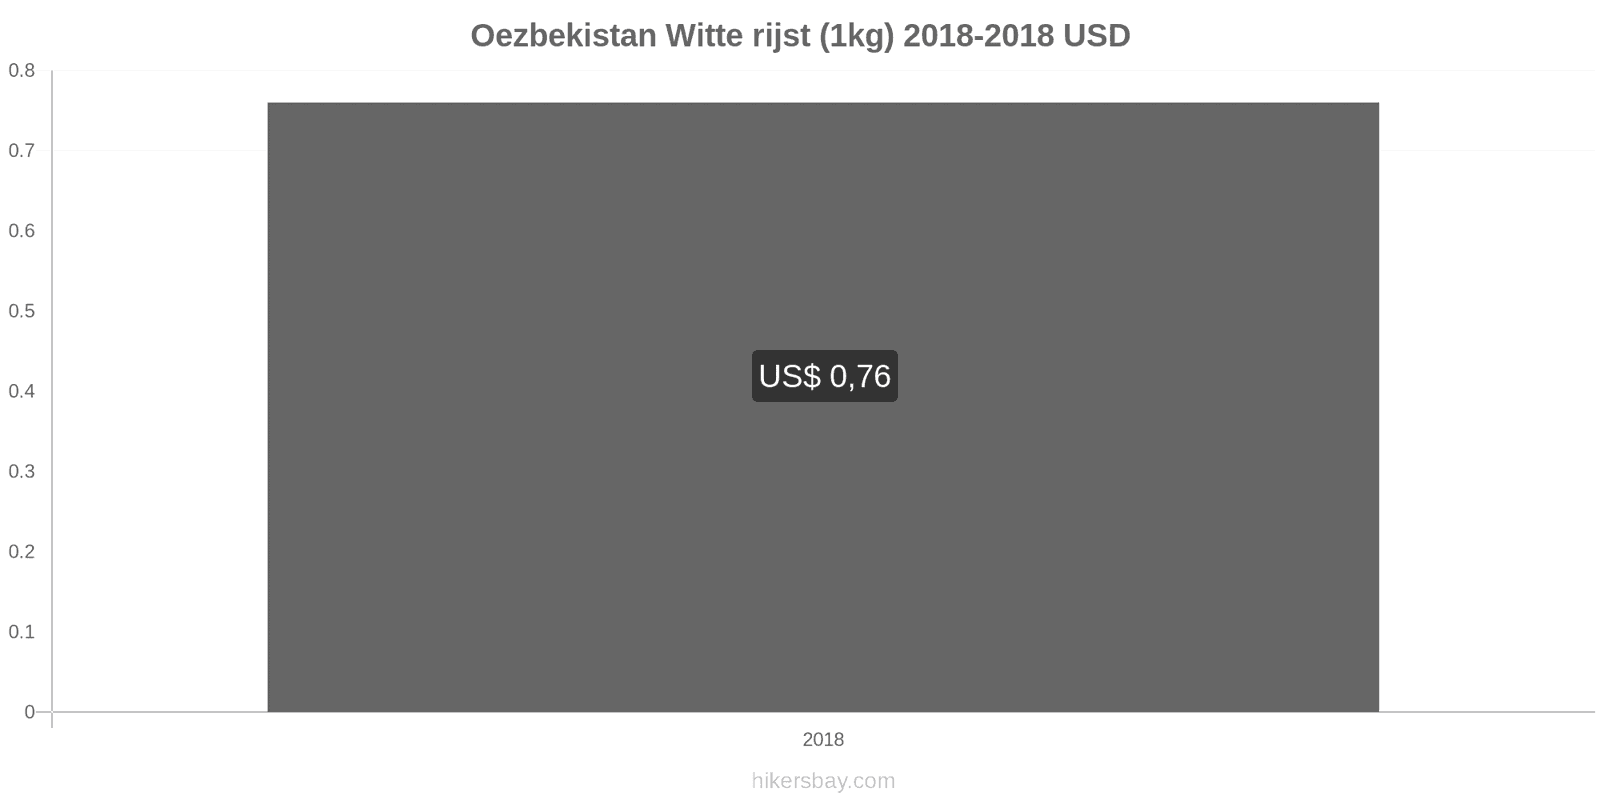 Oezbekistan prijswijzigingen Kilo witte rijst hikersbay.com